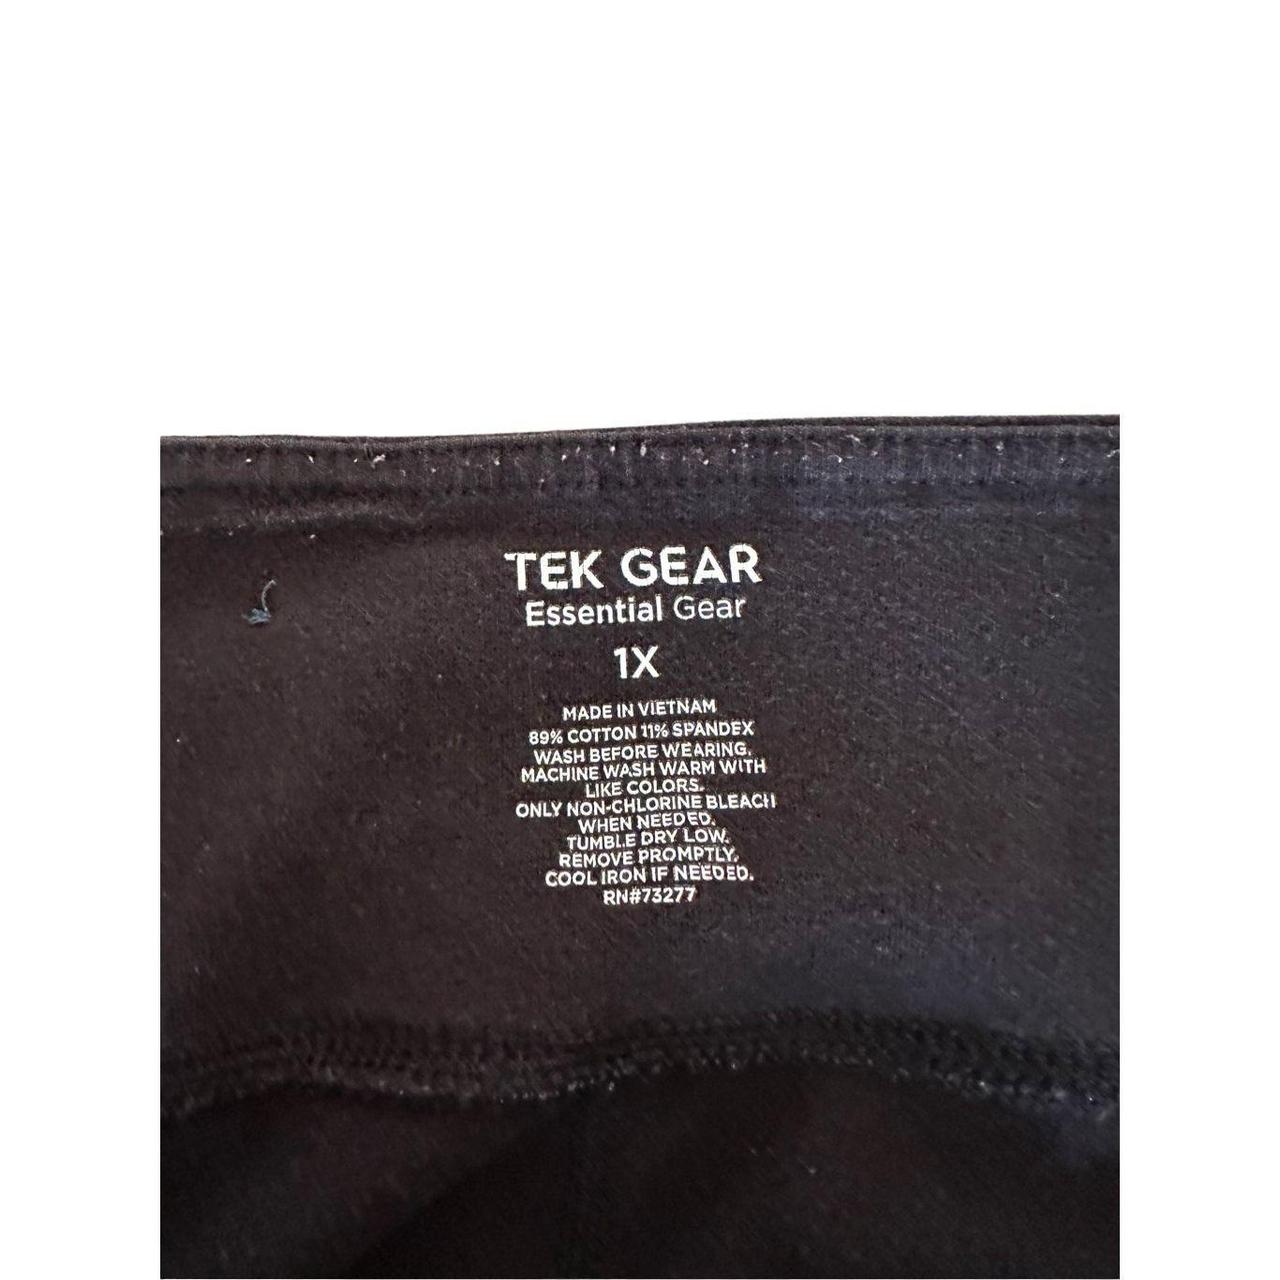 Tek Gear women's leggings size 1x - Depop